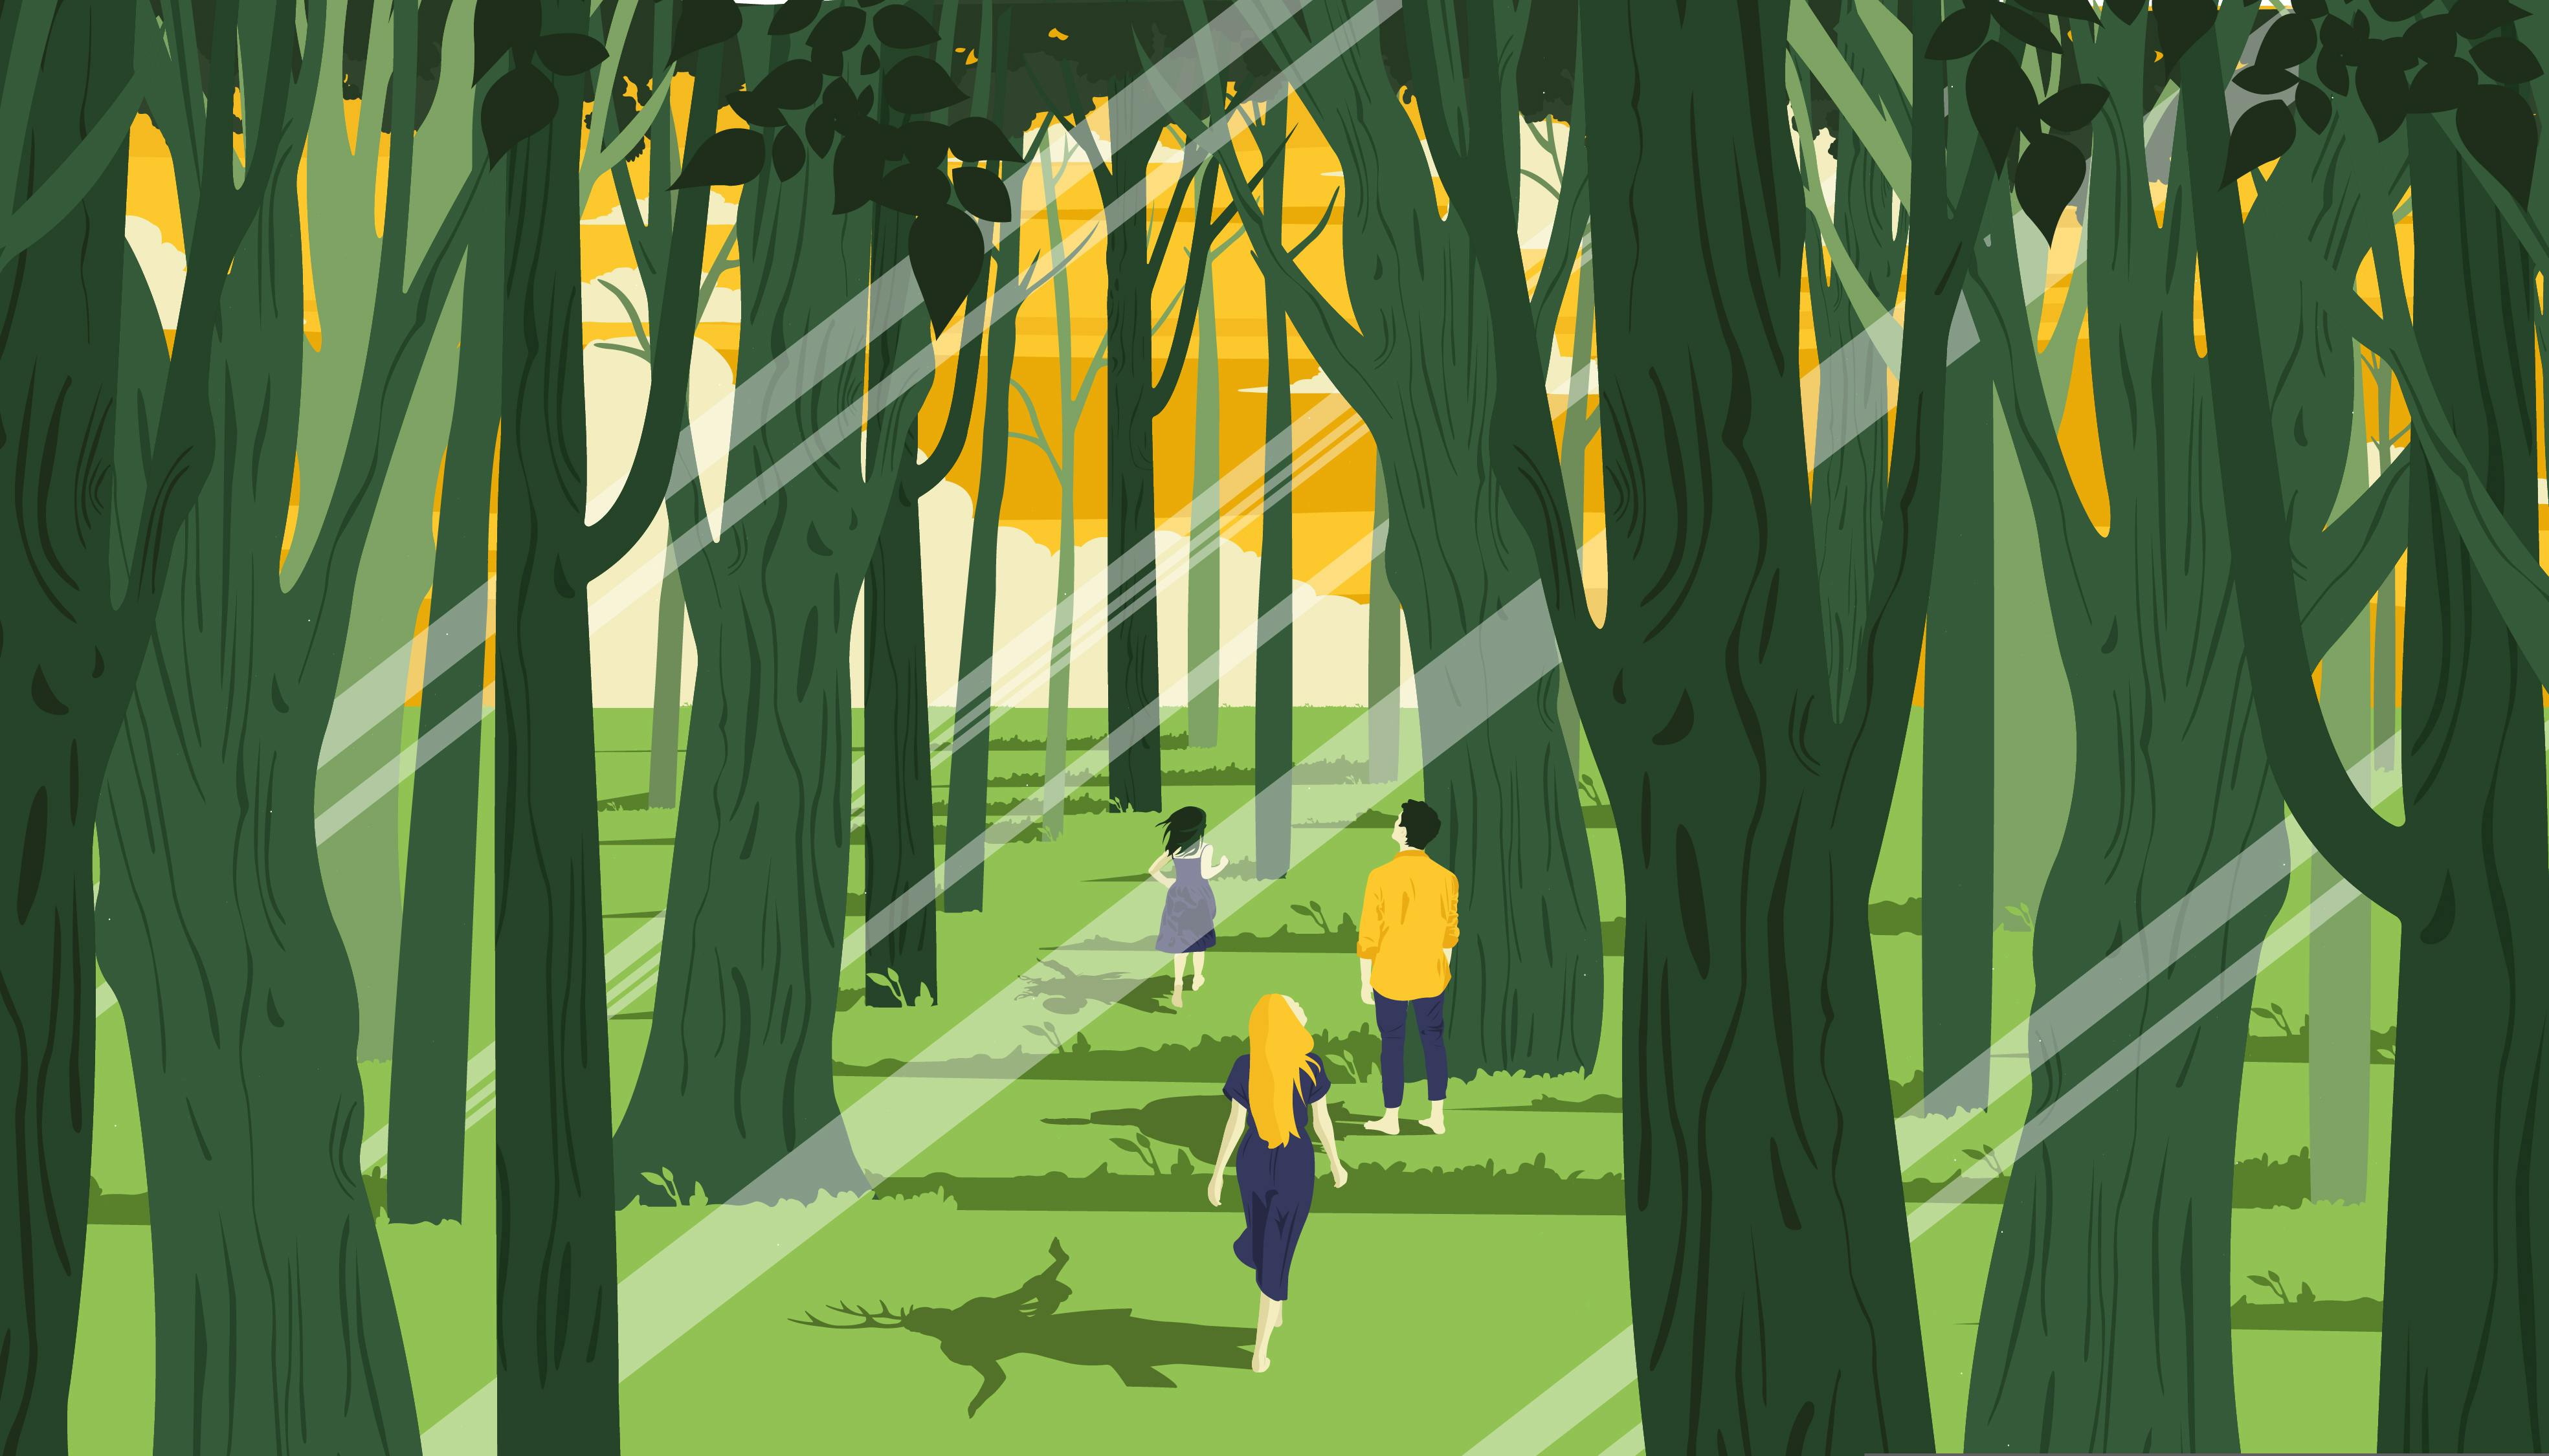 L'illustrazione mostra un bosco al tramonto. Tre ragazzi lo attraversano camminando; guardano verso l'orizzonte, li vediamo di schiena. Le ombre che proiettano sul terreno mostrano esseri incantati, a metà tra rito e magia.